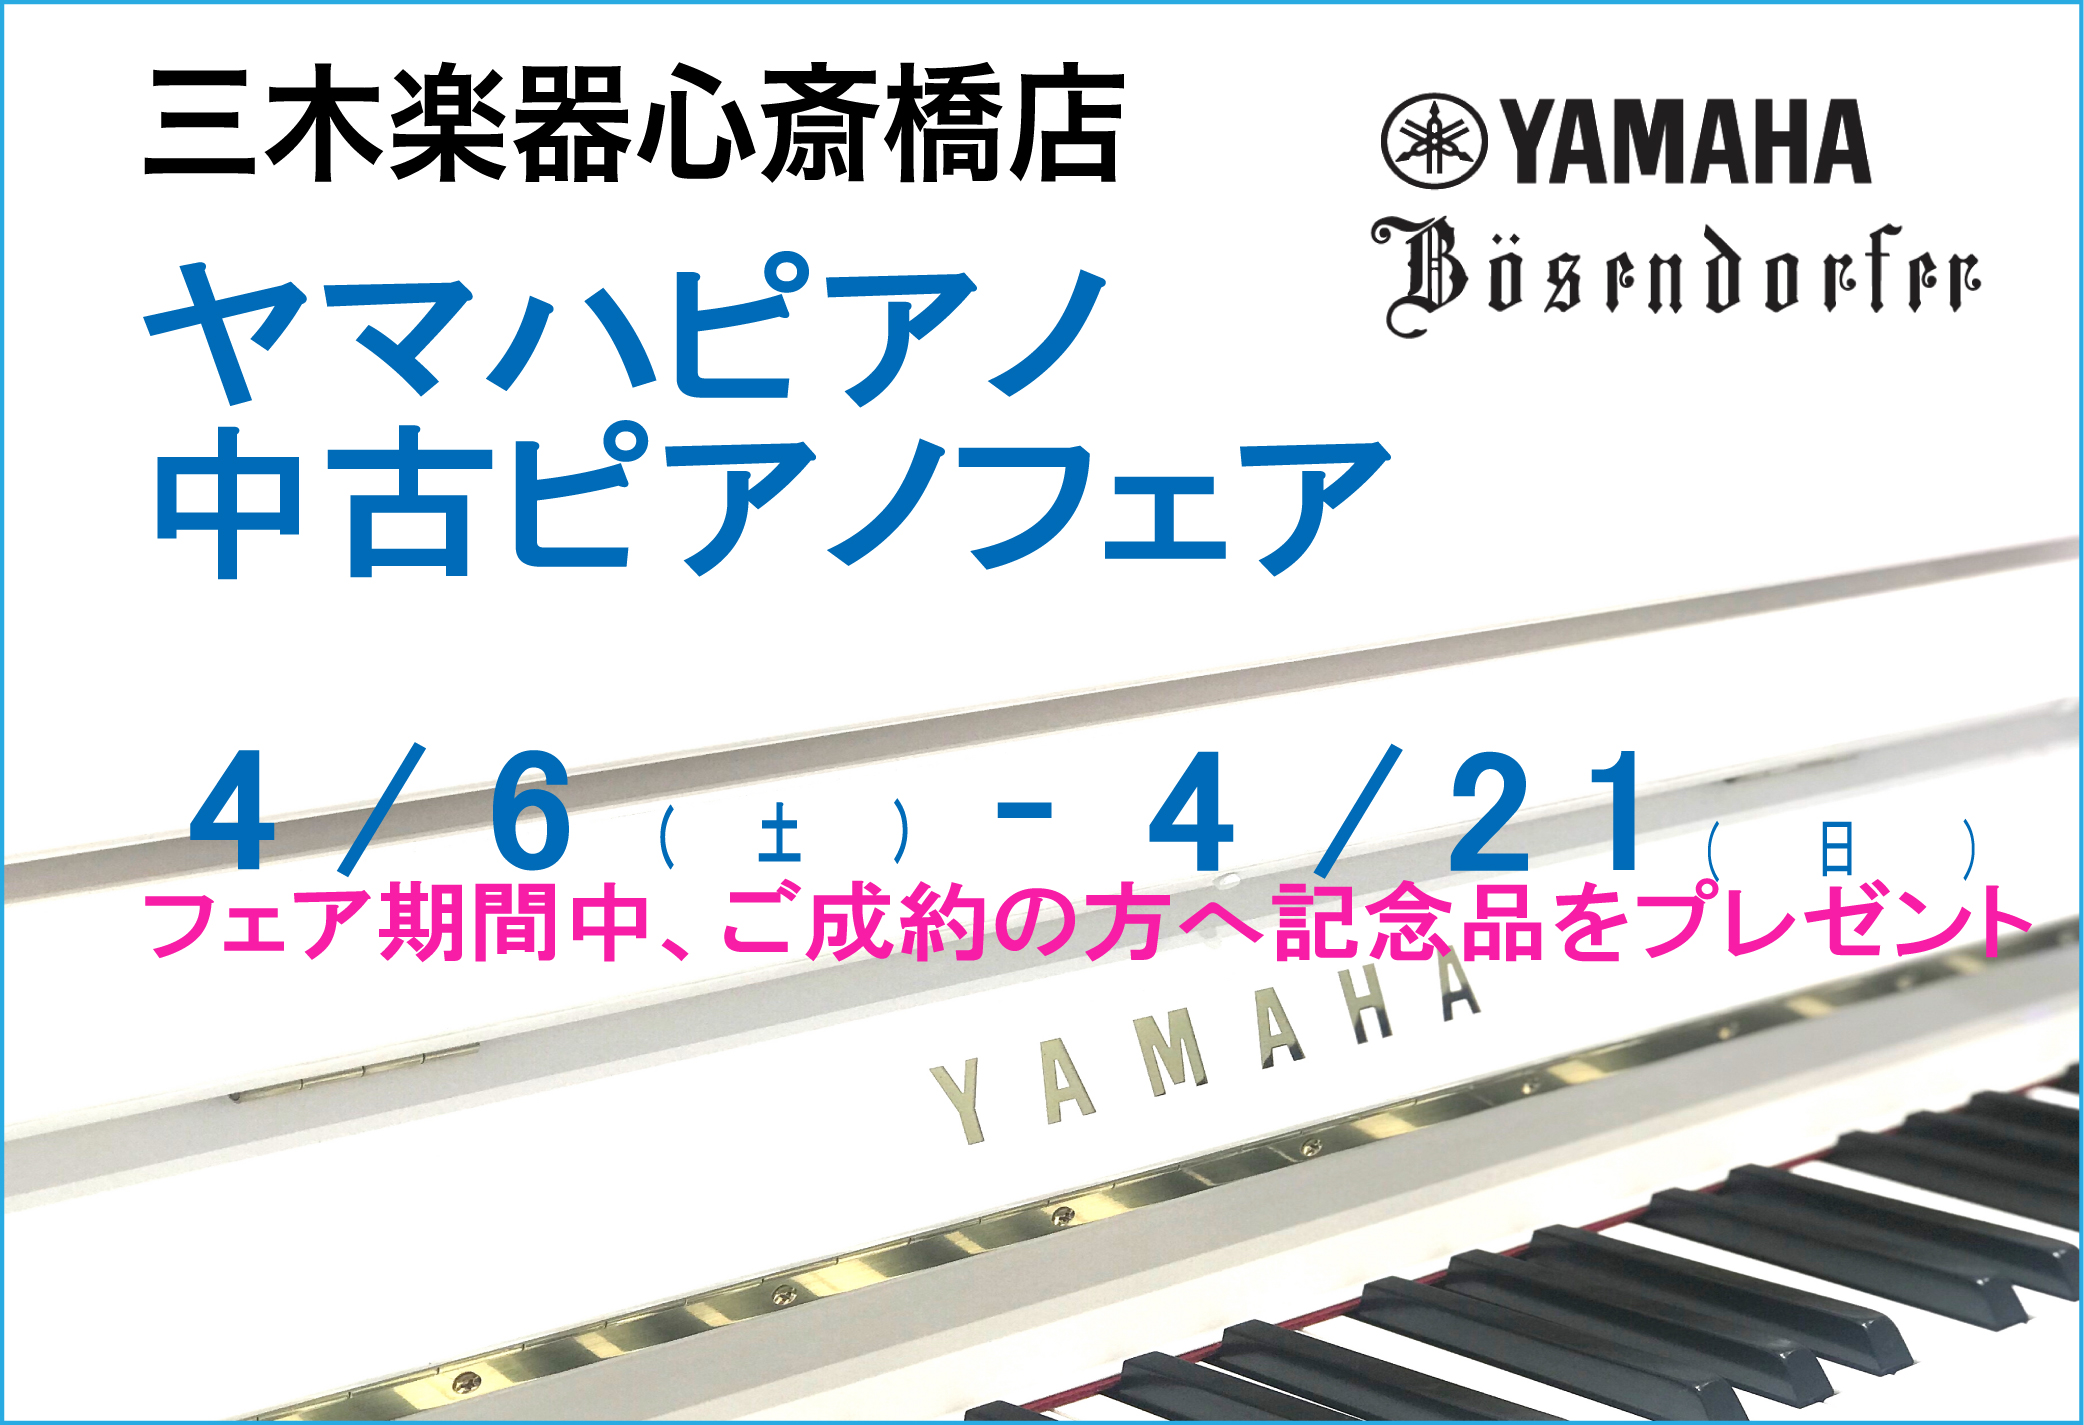 【心斎橋店】ヤマハピアノ・中古ピアノフェア